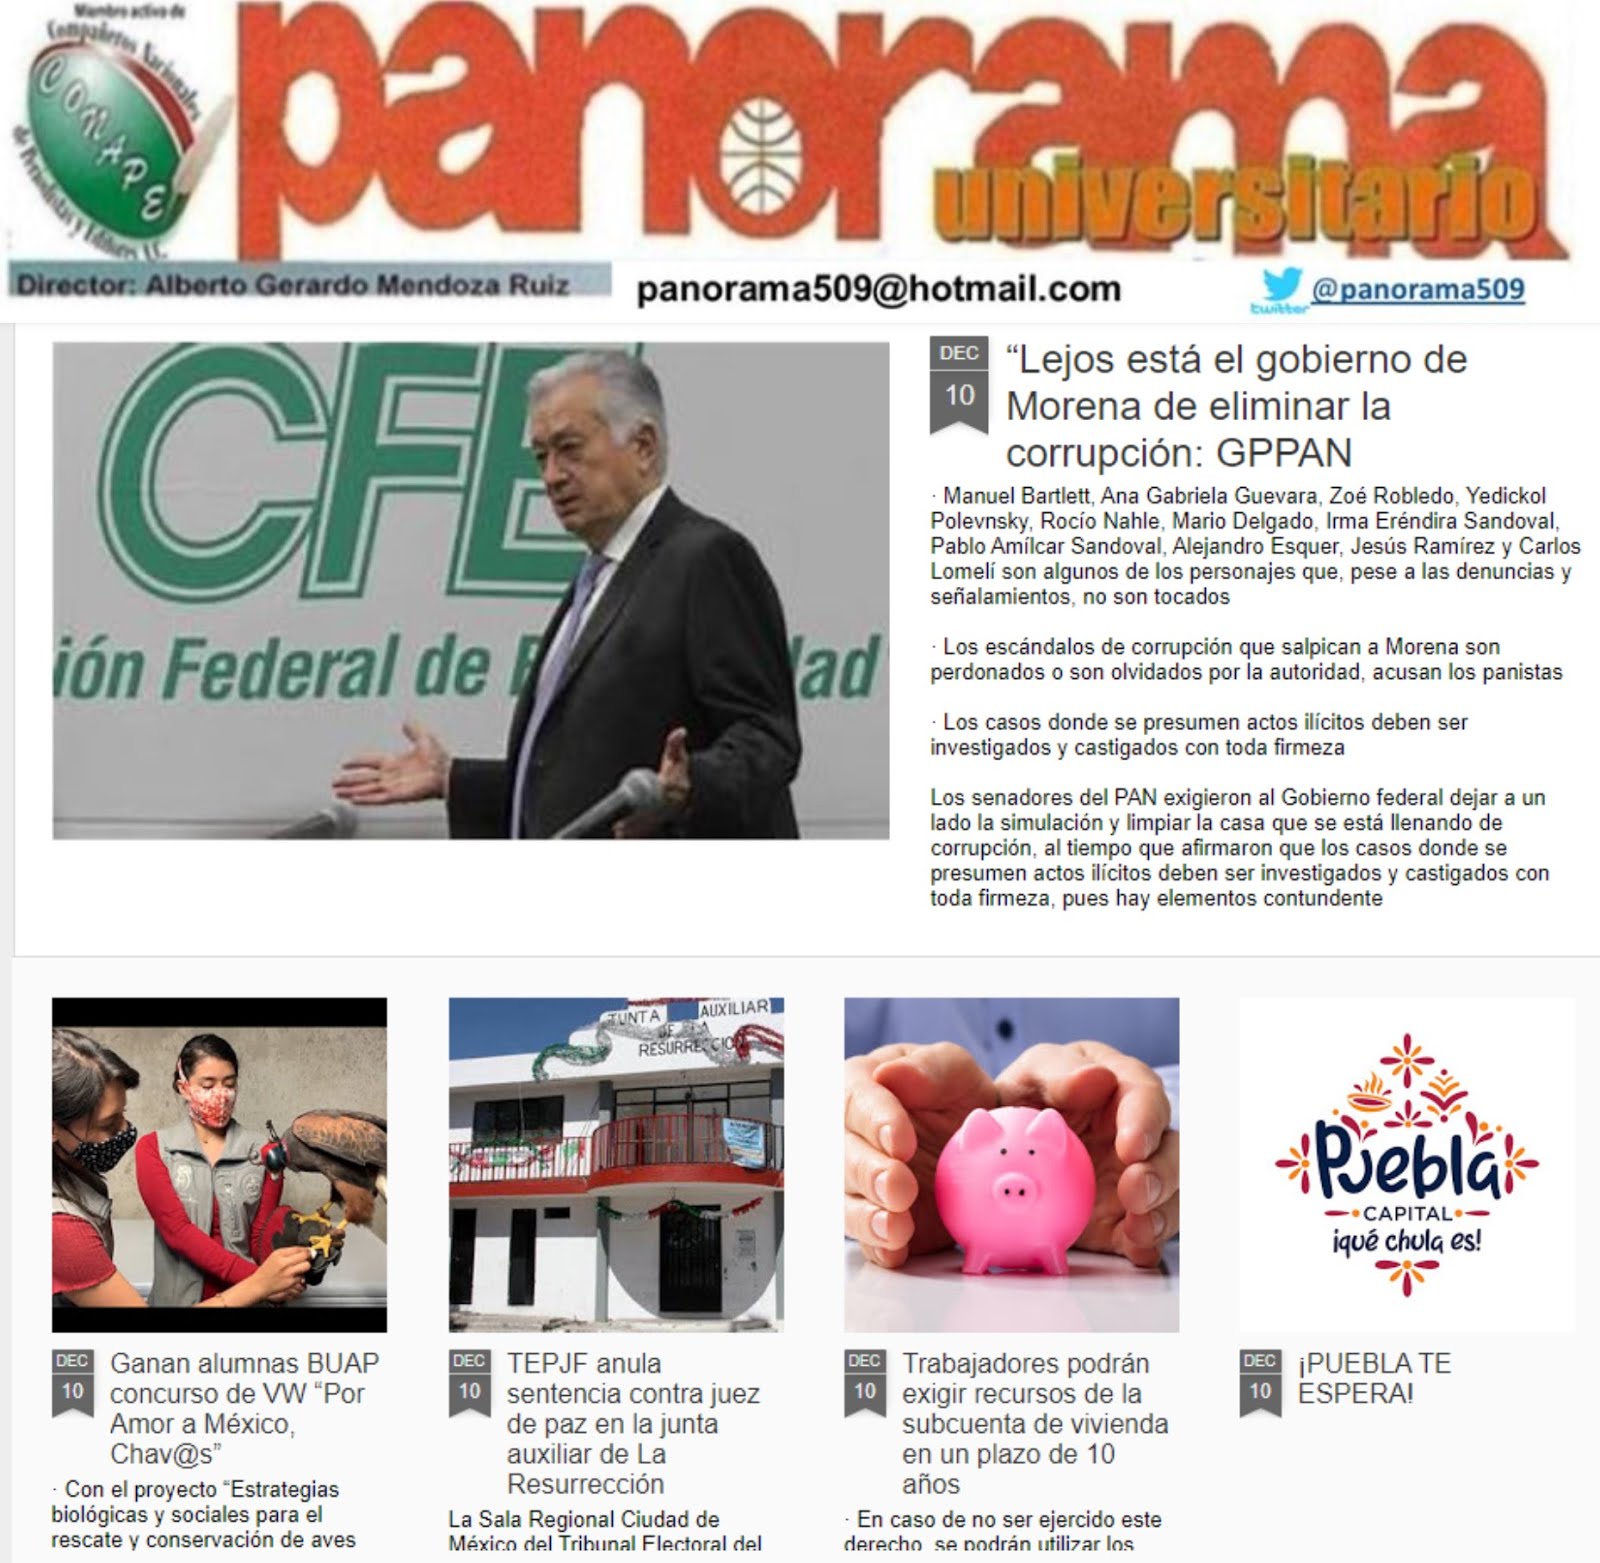 “Lejos está el gobierno de Morena de eliminar la corrupción: GPPAN